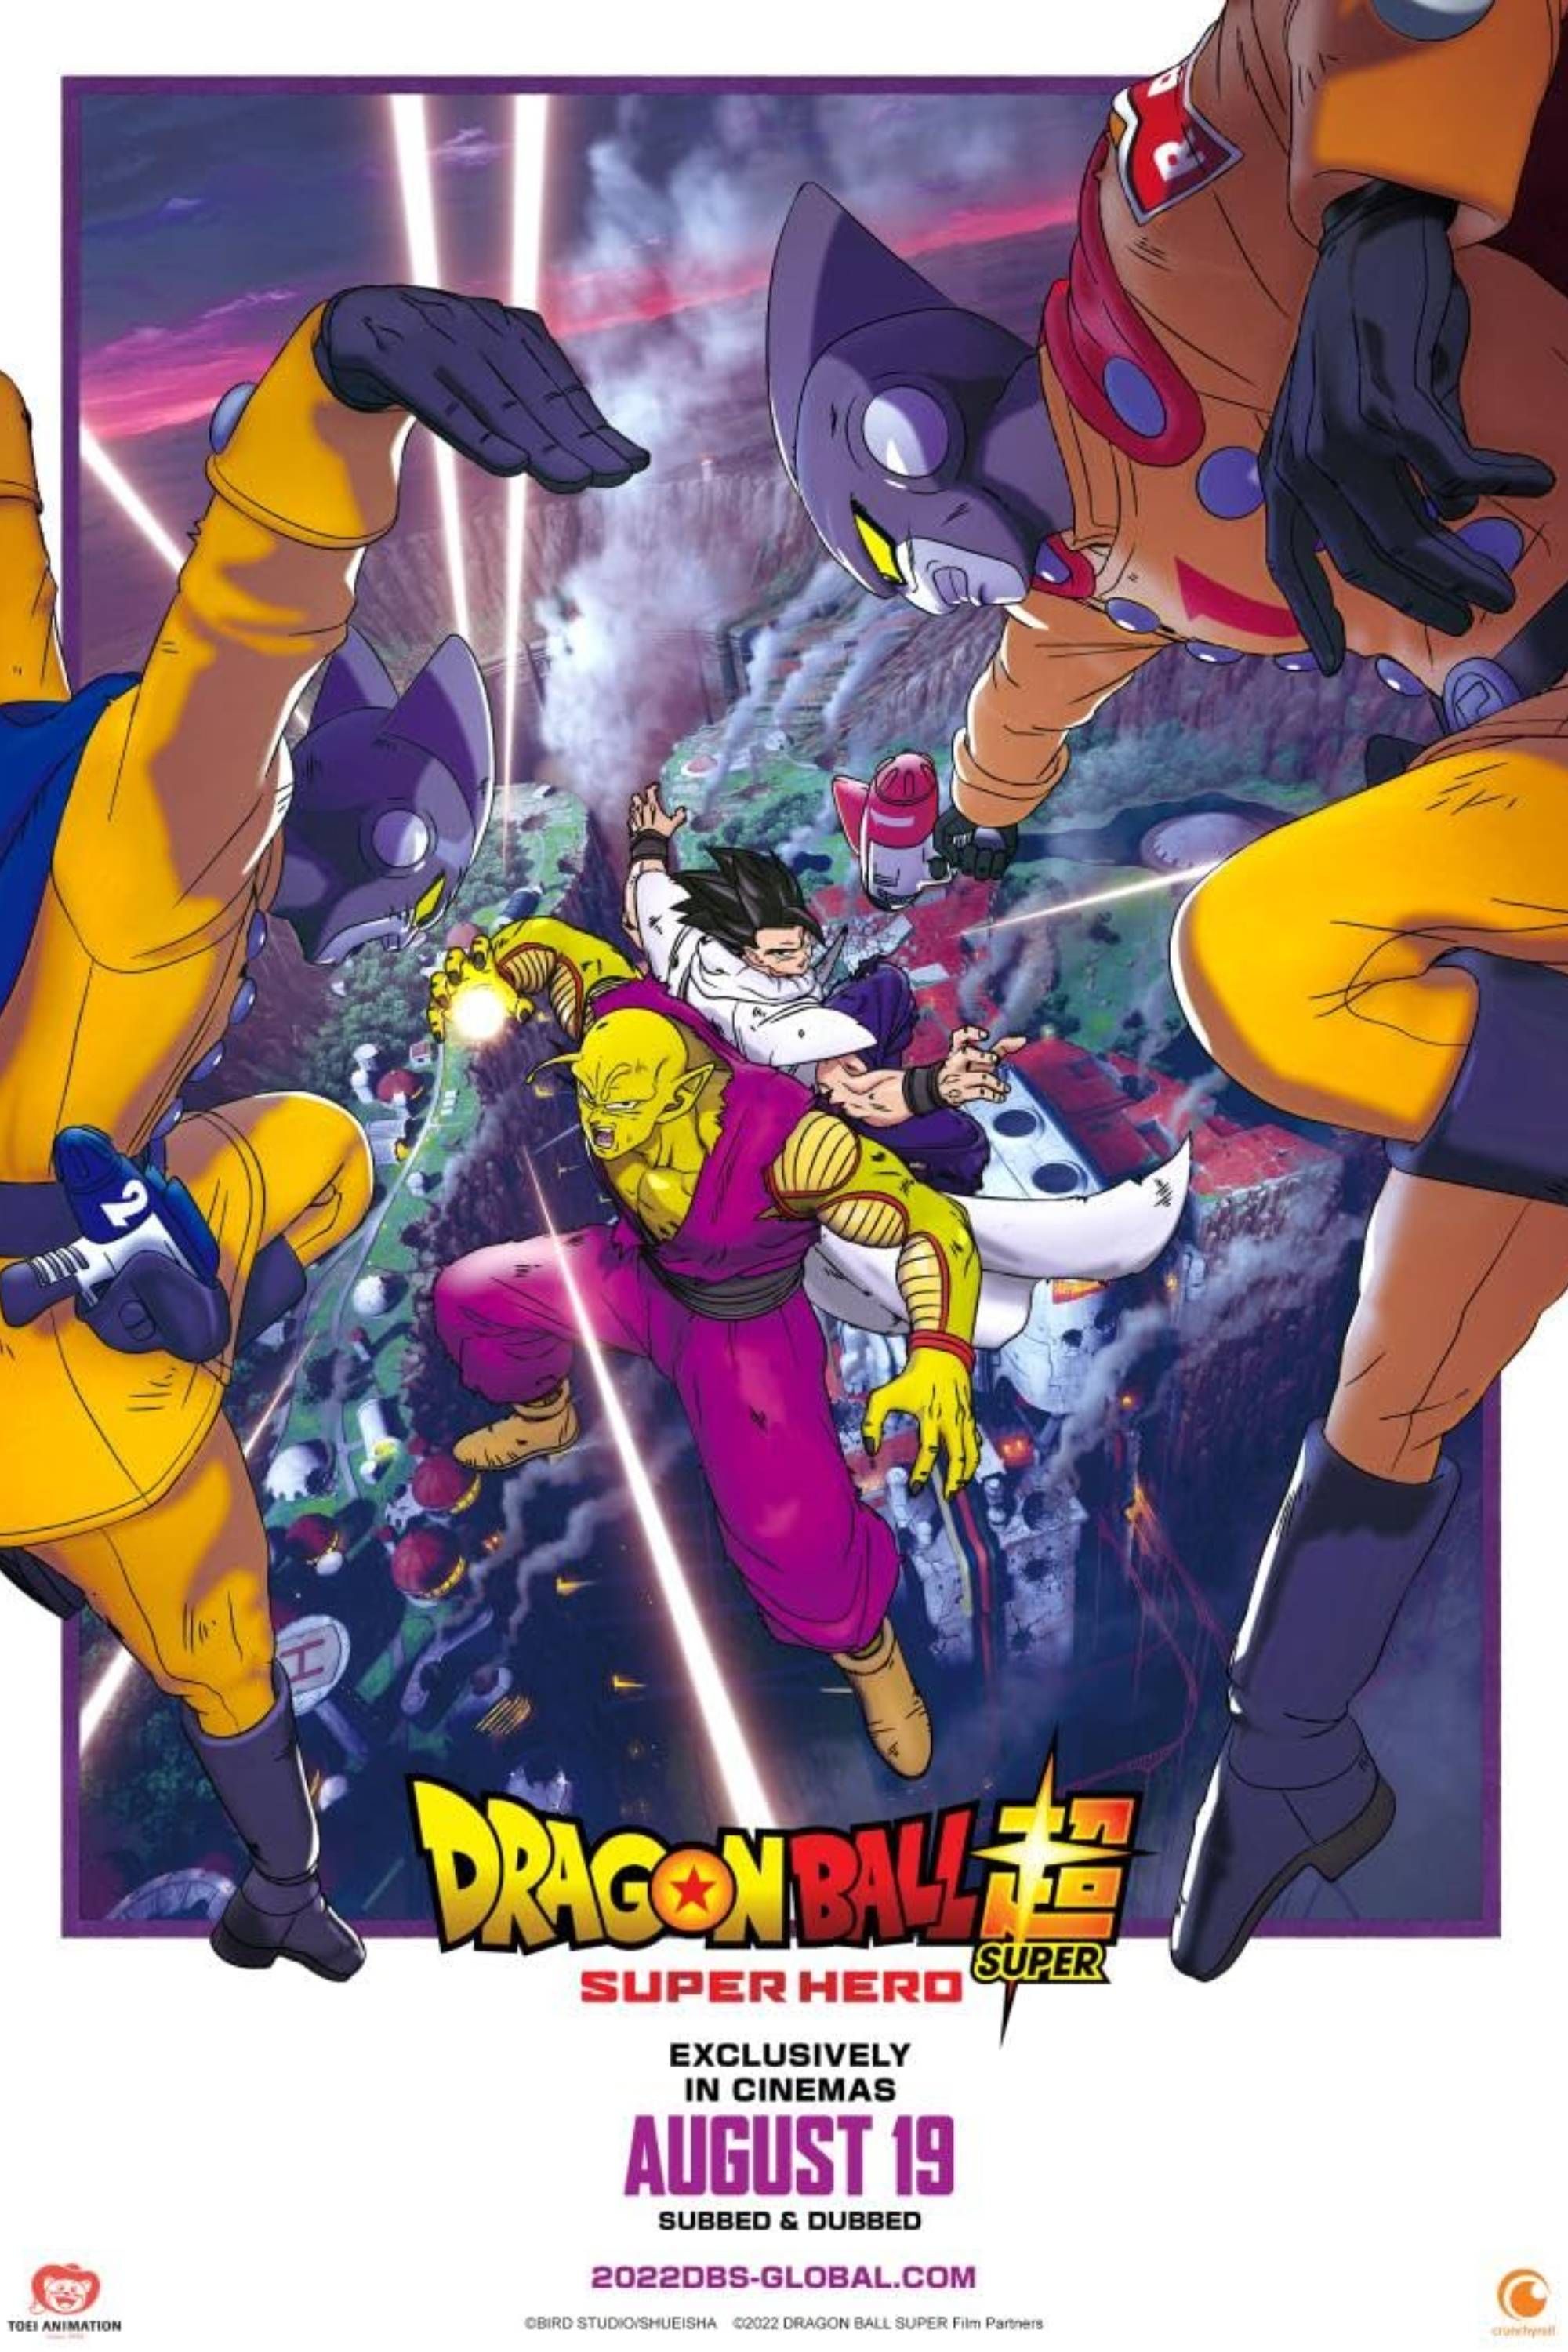 Dragon Ball Super Super Hero Theatrical Poster